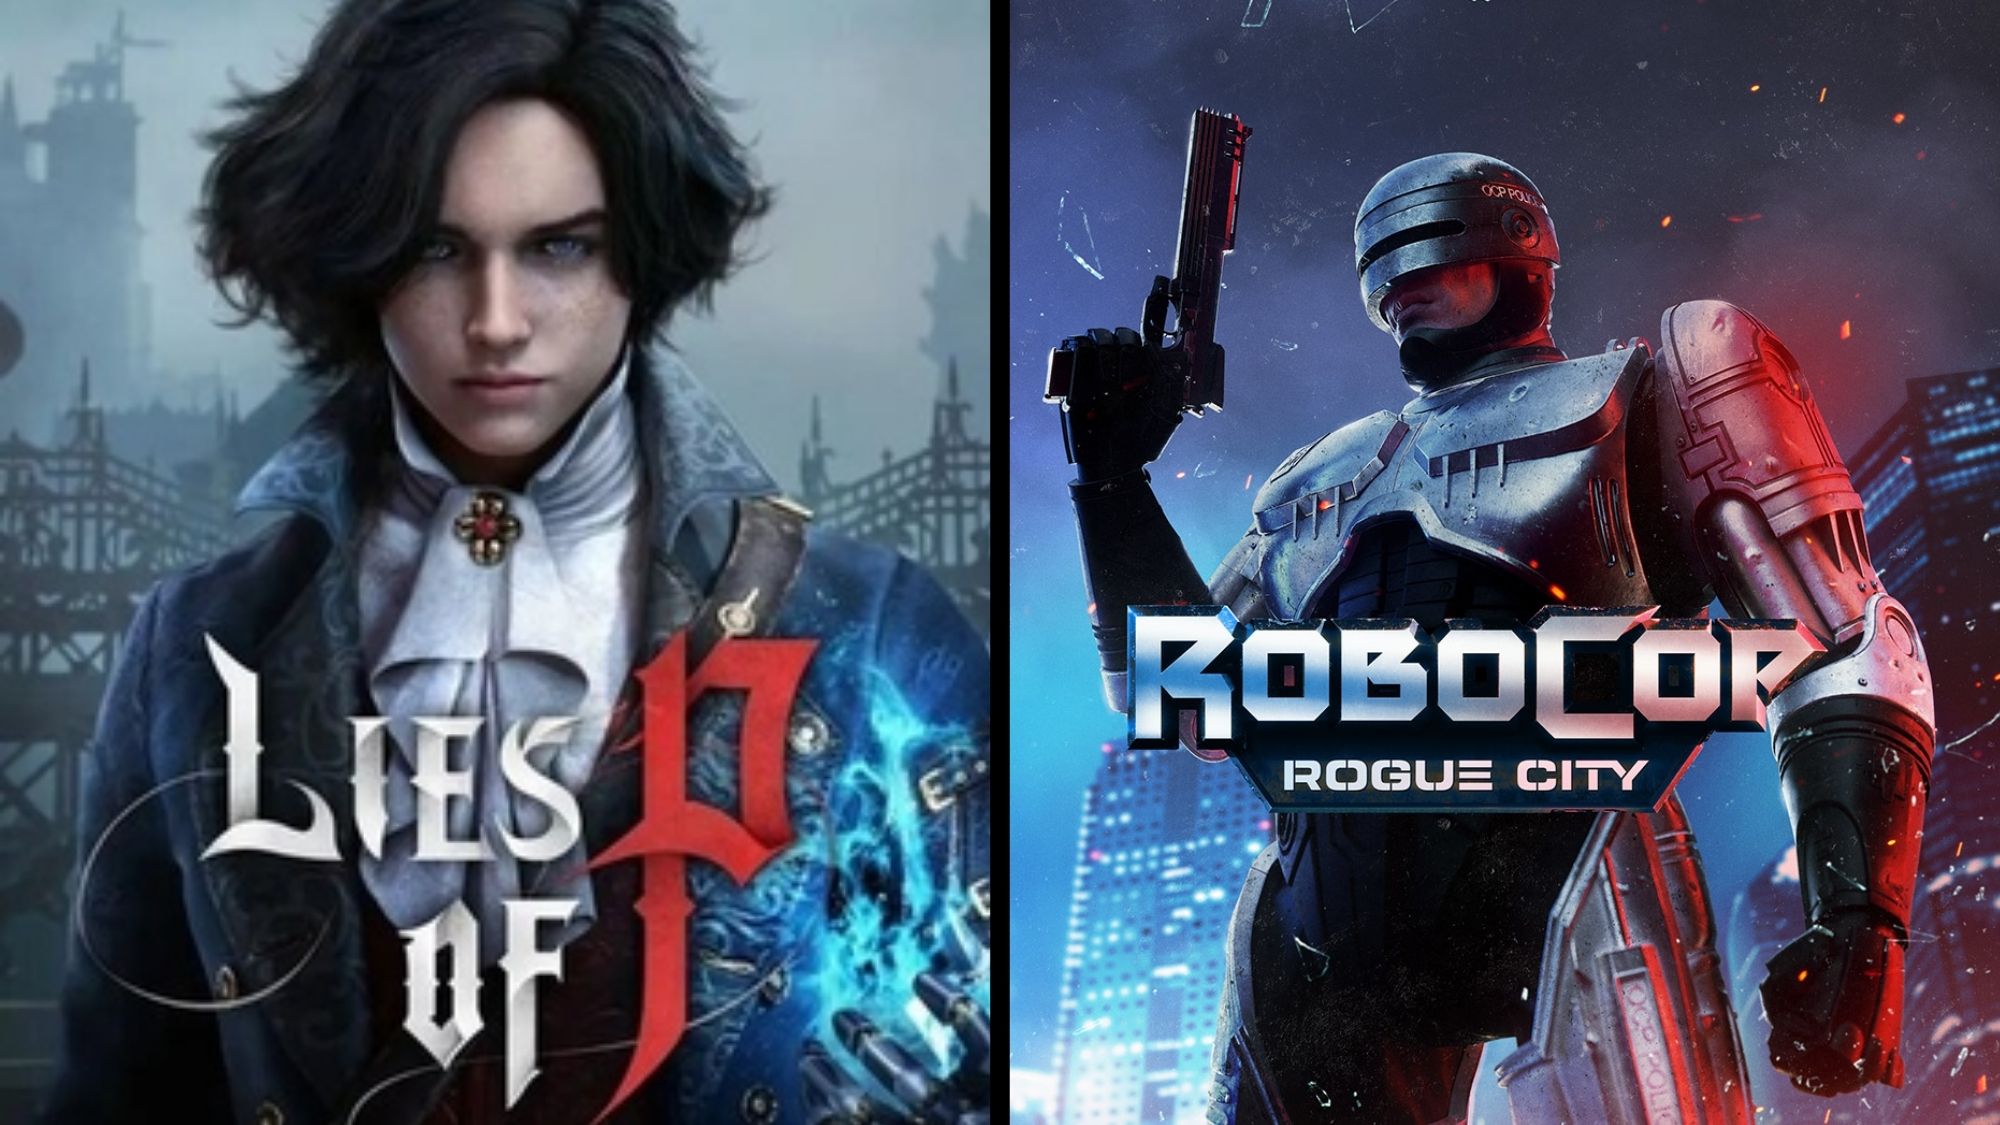 Les mensonges de P et Robocop : les démos de Rogue City ont contribué à améliorer les jeux principaux